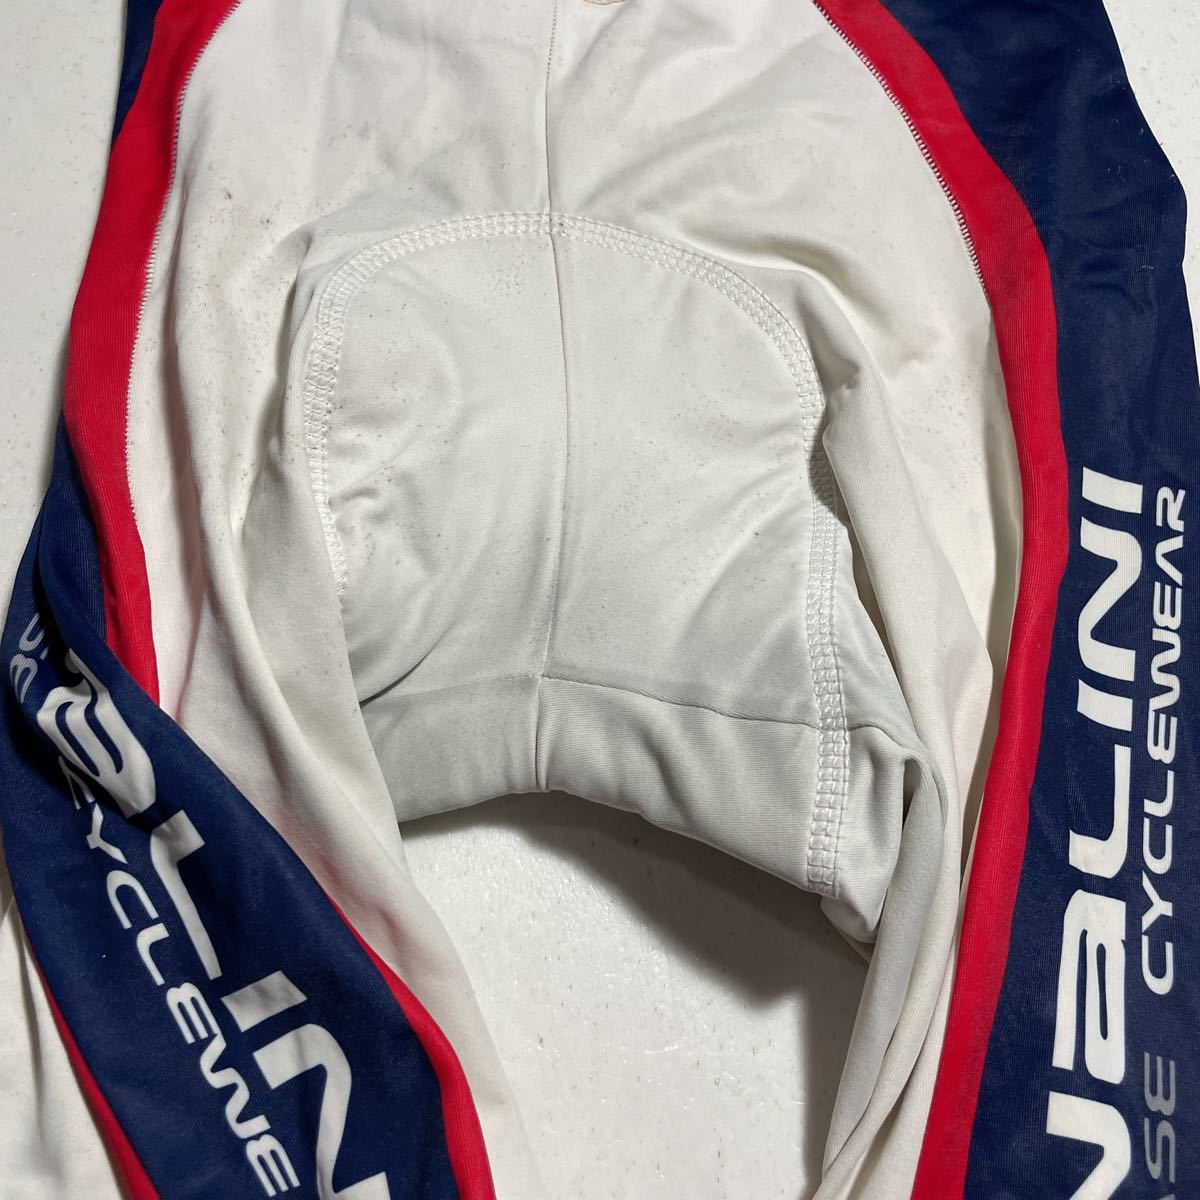 ナリーニ nalini 白 ホワイト 自転車 サイクリング サイクルウェア ビブショーツ Mサイズ_画像4